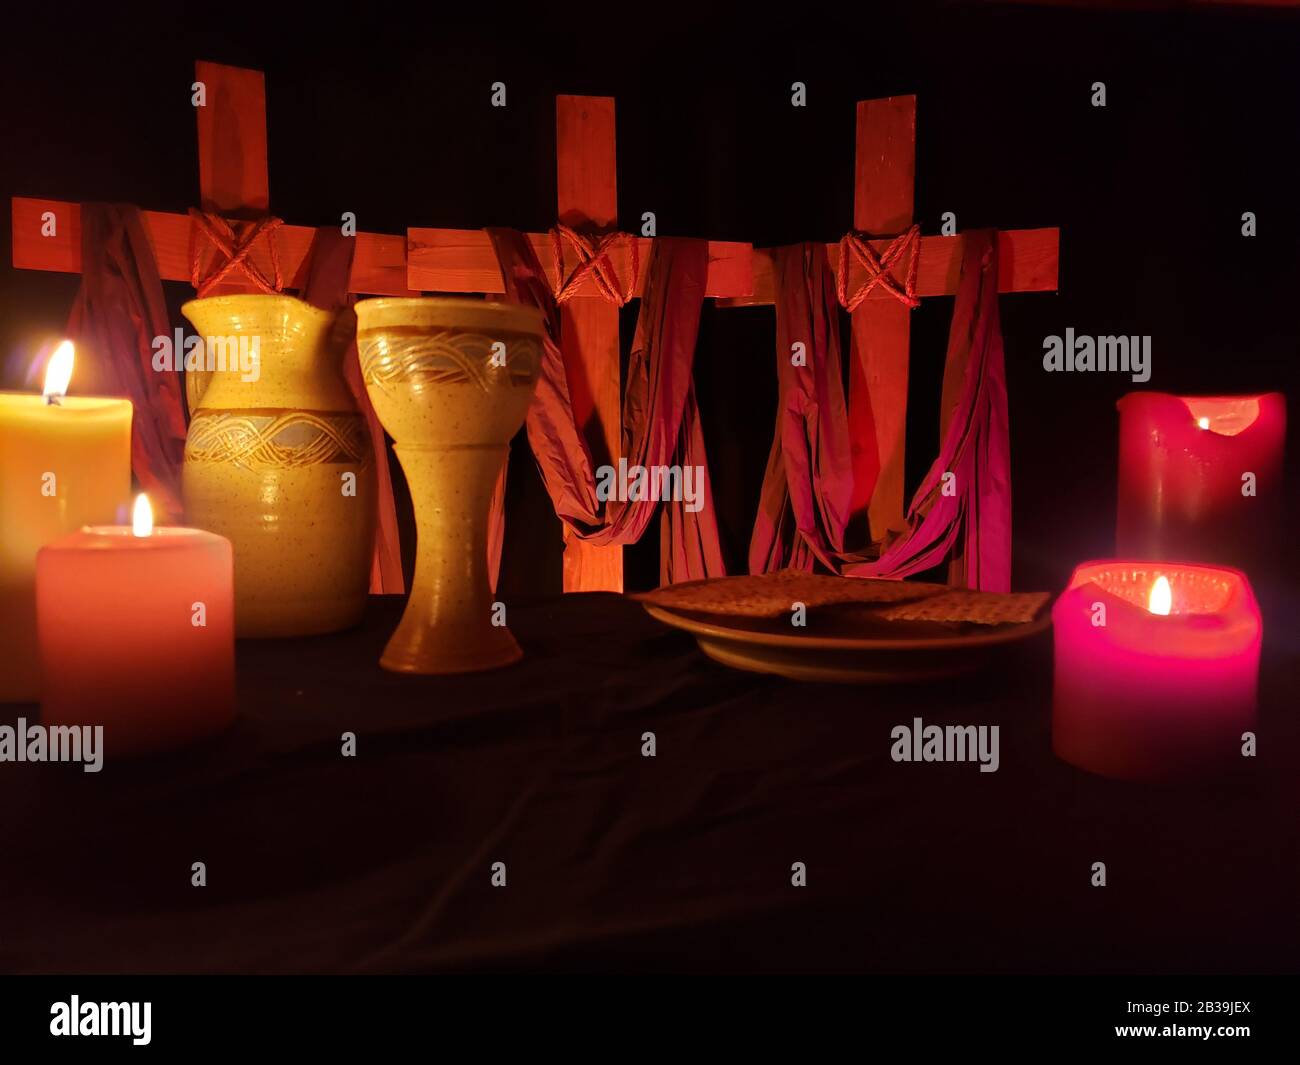 Semaine Sainte Avec un ensemble de communion et des bougies sur une table noire 01 Banque D'Images